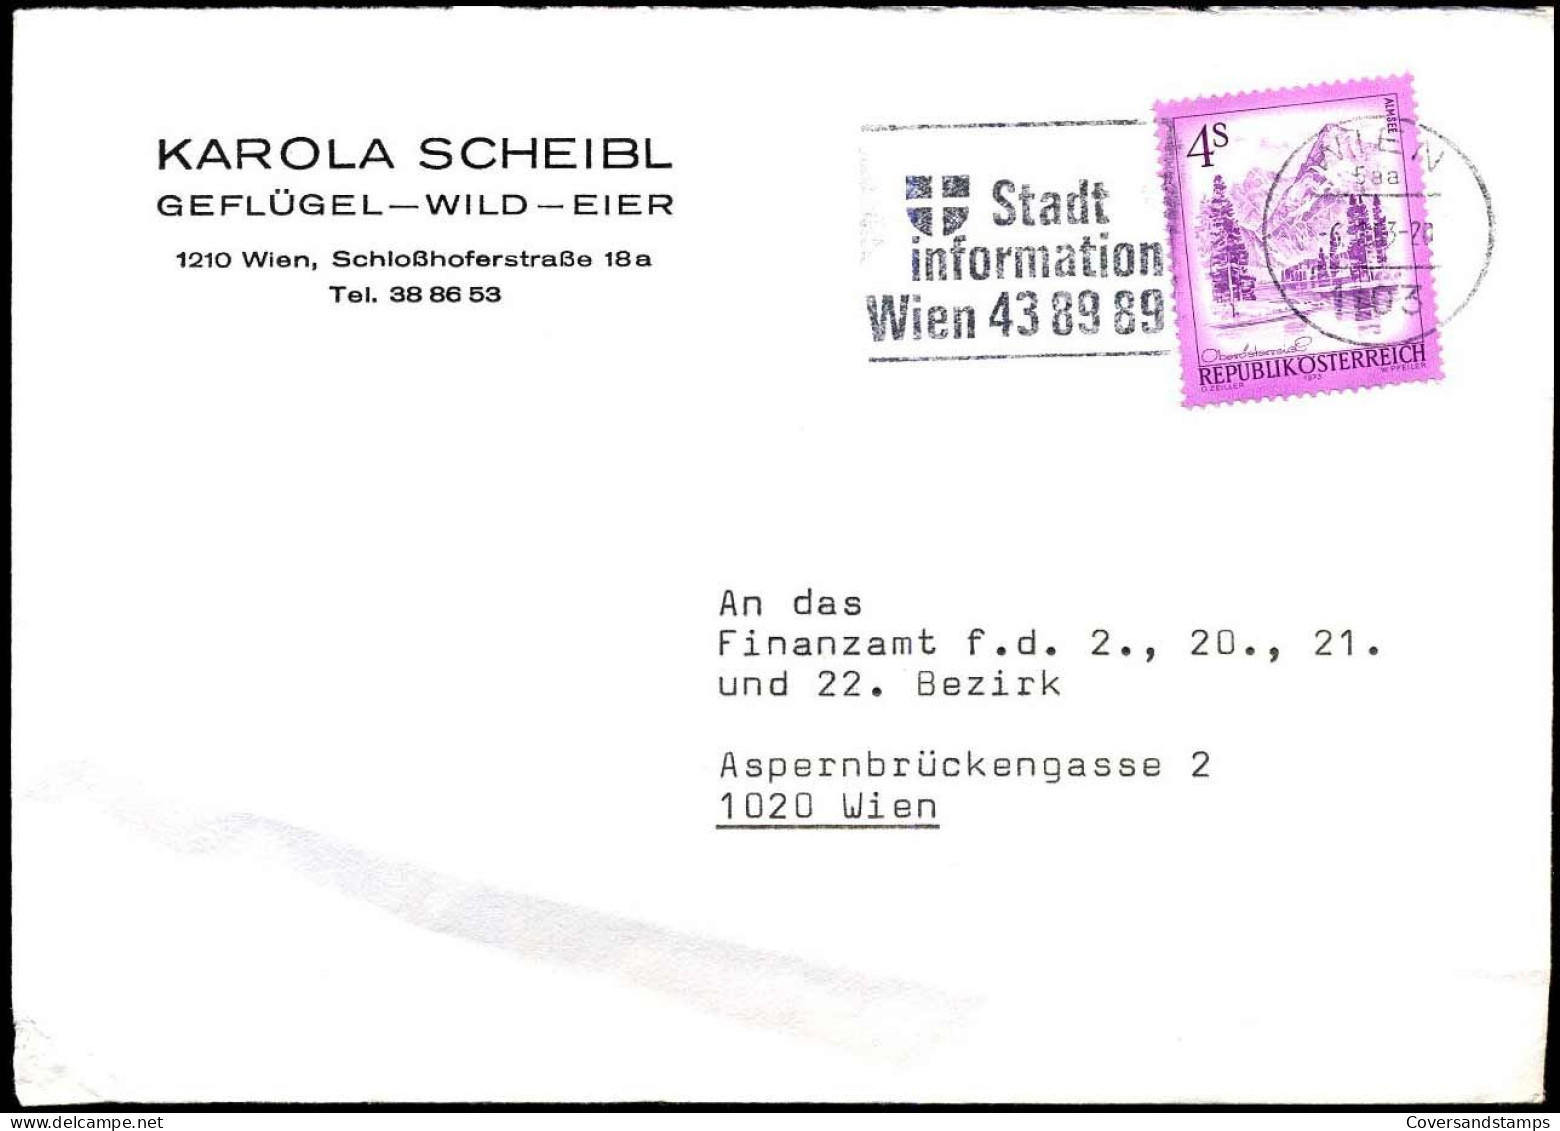 Cover - "Karola Scheibl, Geflügel - Wild - Eier, Wien" - Covers & Documents